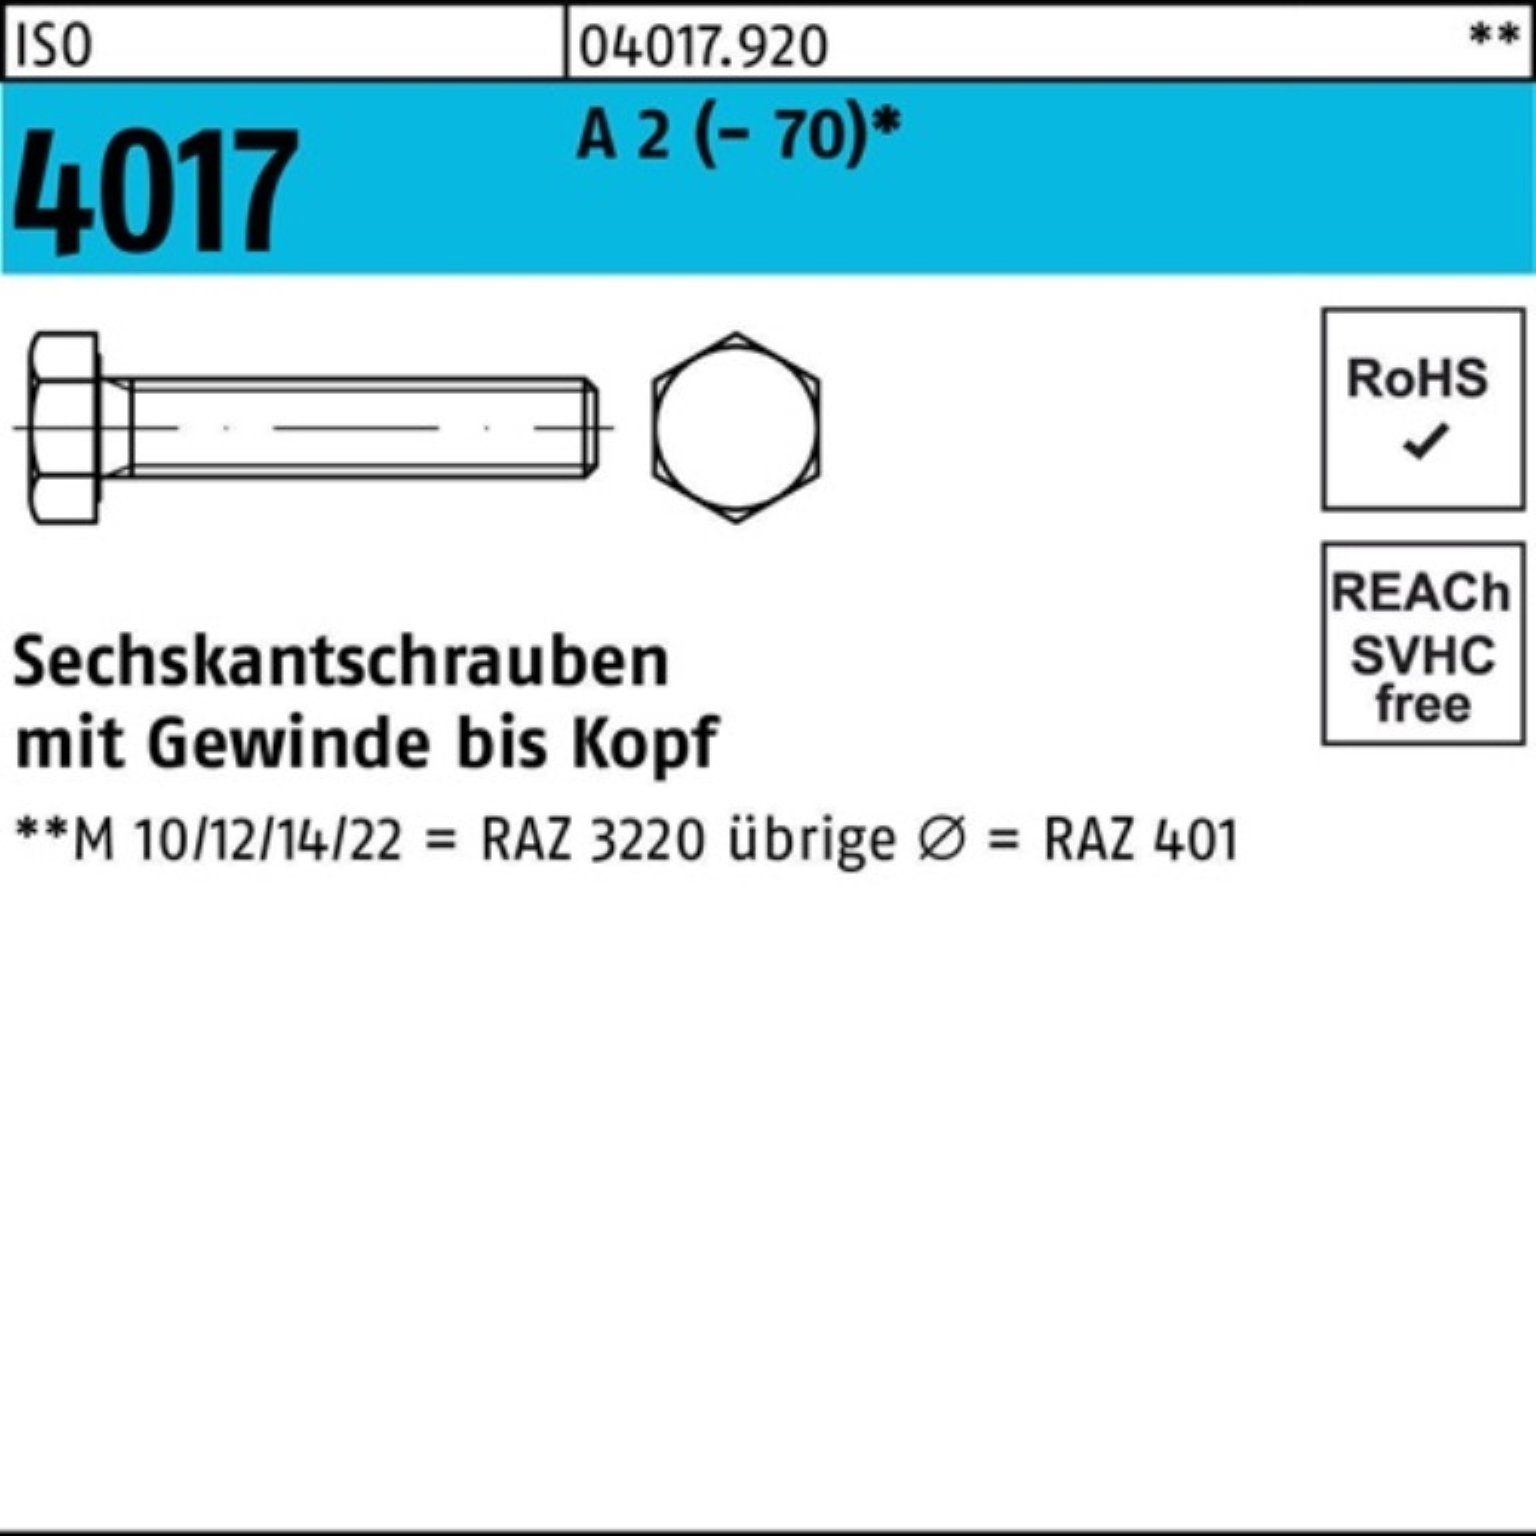 Bufab Sechskantschraube 100er Pack Sechskantschraube ISO 4017 VG M14x 80 A 2 (70) 50 Stück